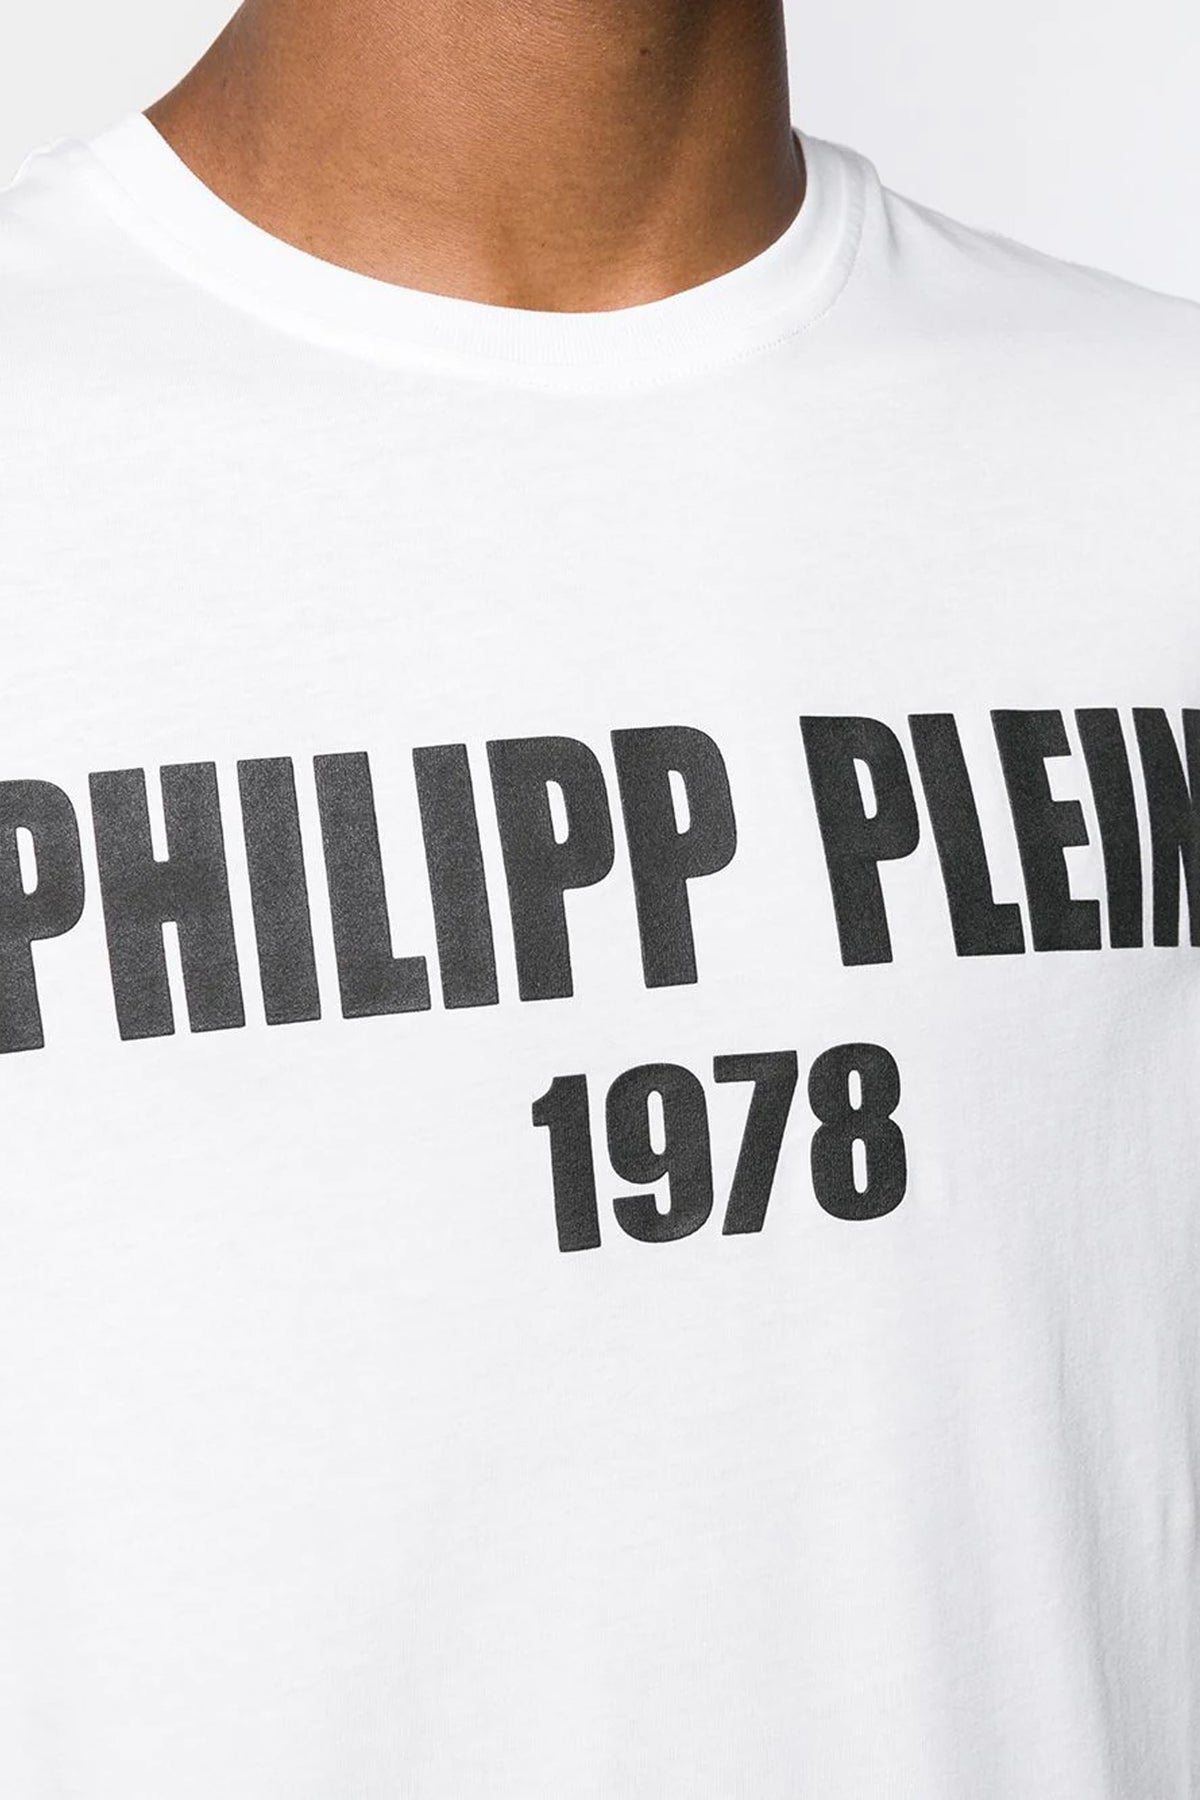 Philipp Plein White PP1978 T-shirt